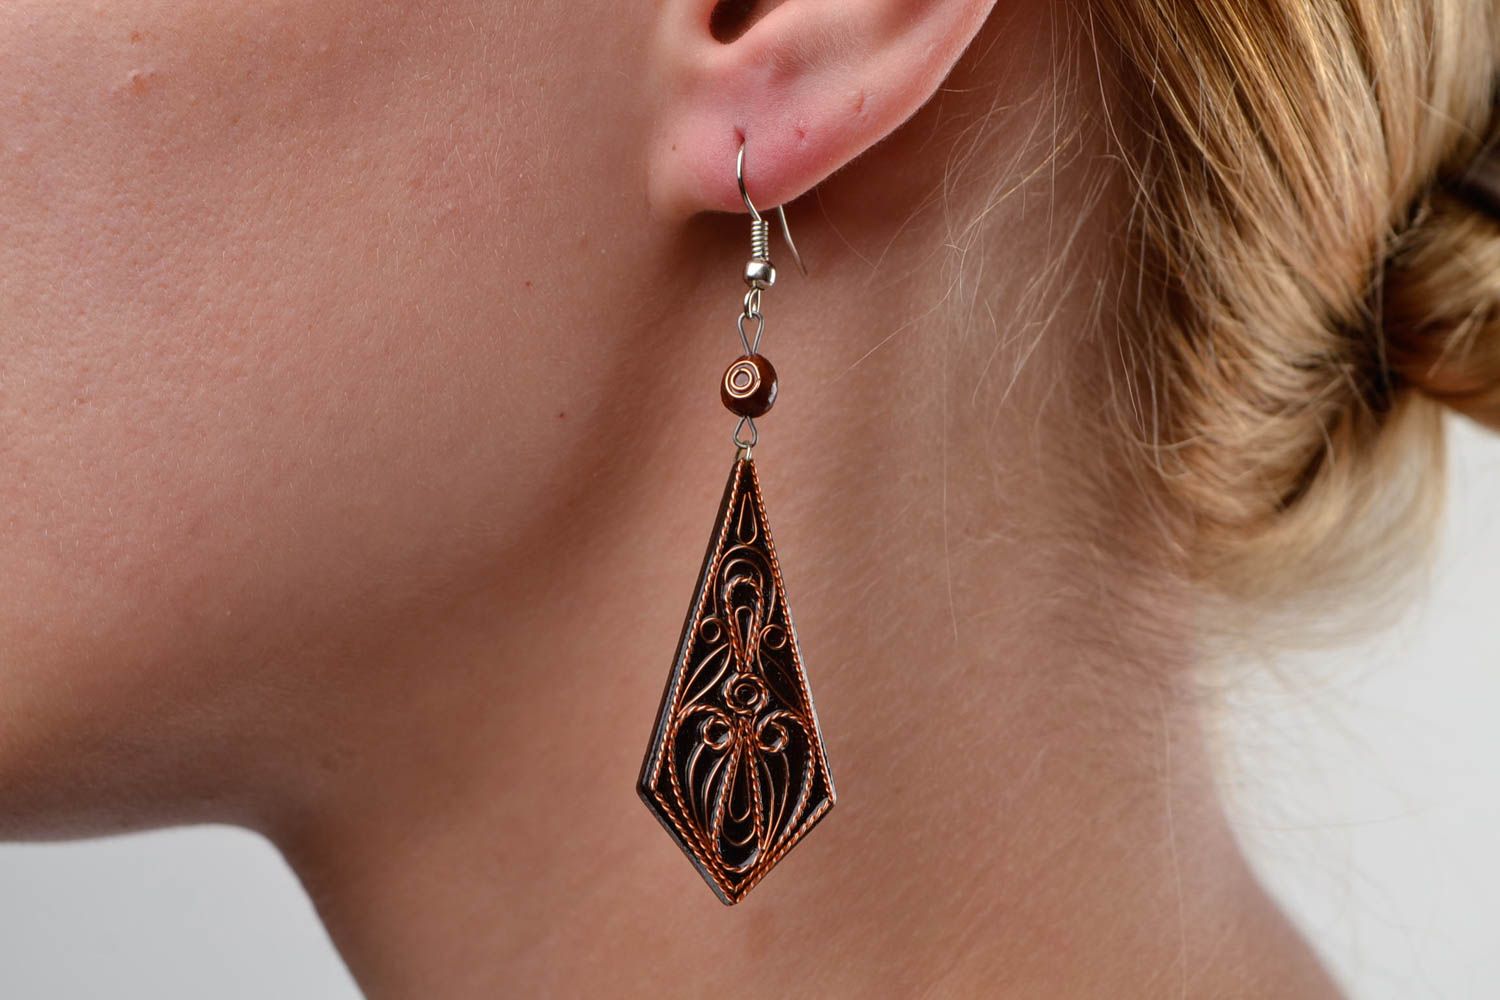 Handmade earrings cute earrings wooden jewelry designer accessories gift ideas photo 1